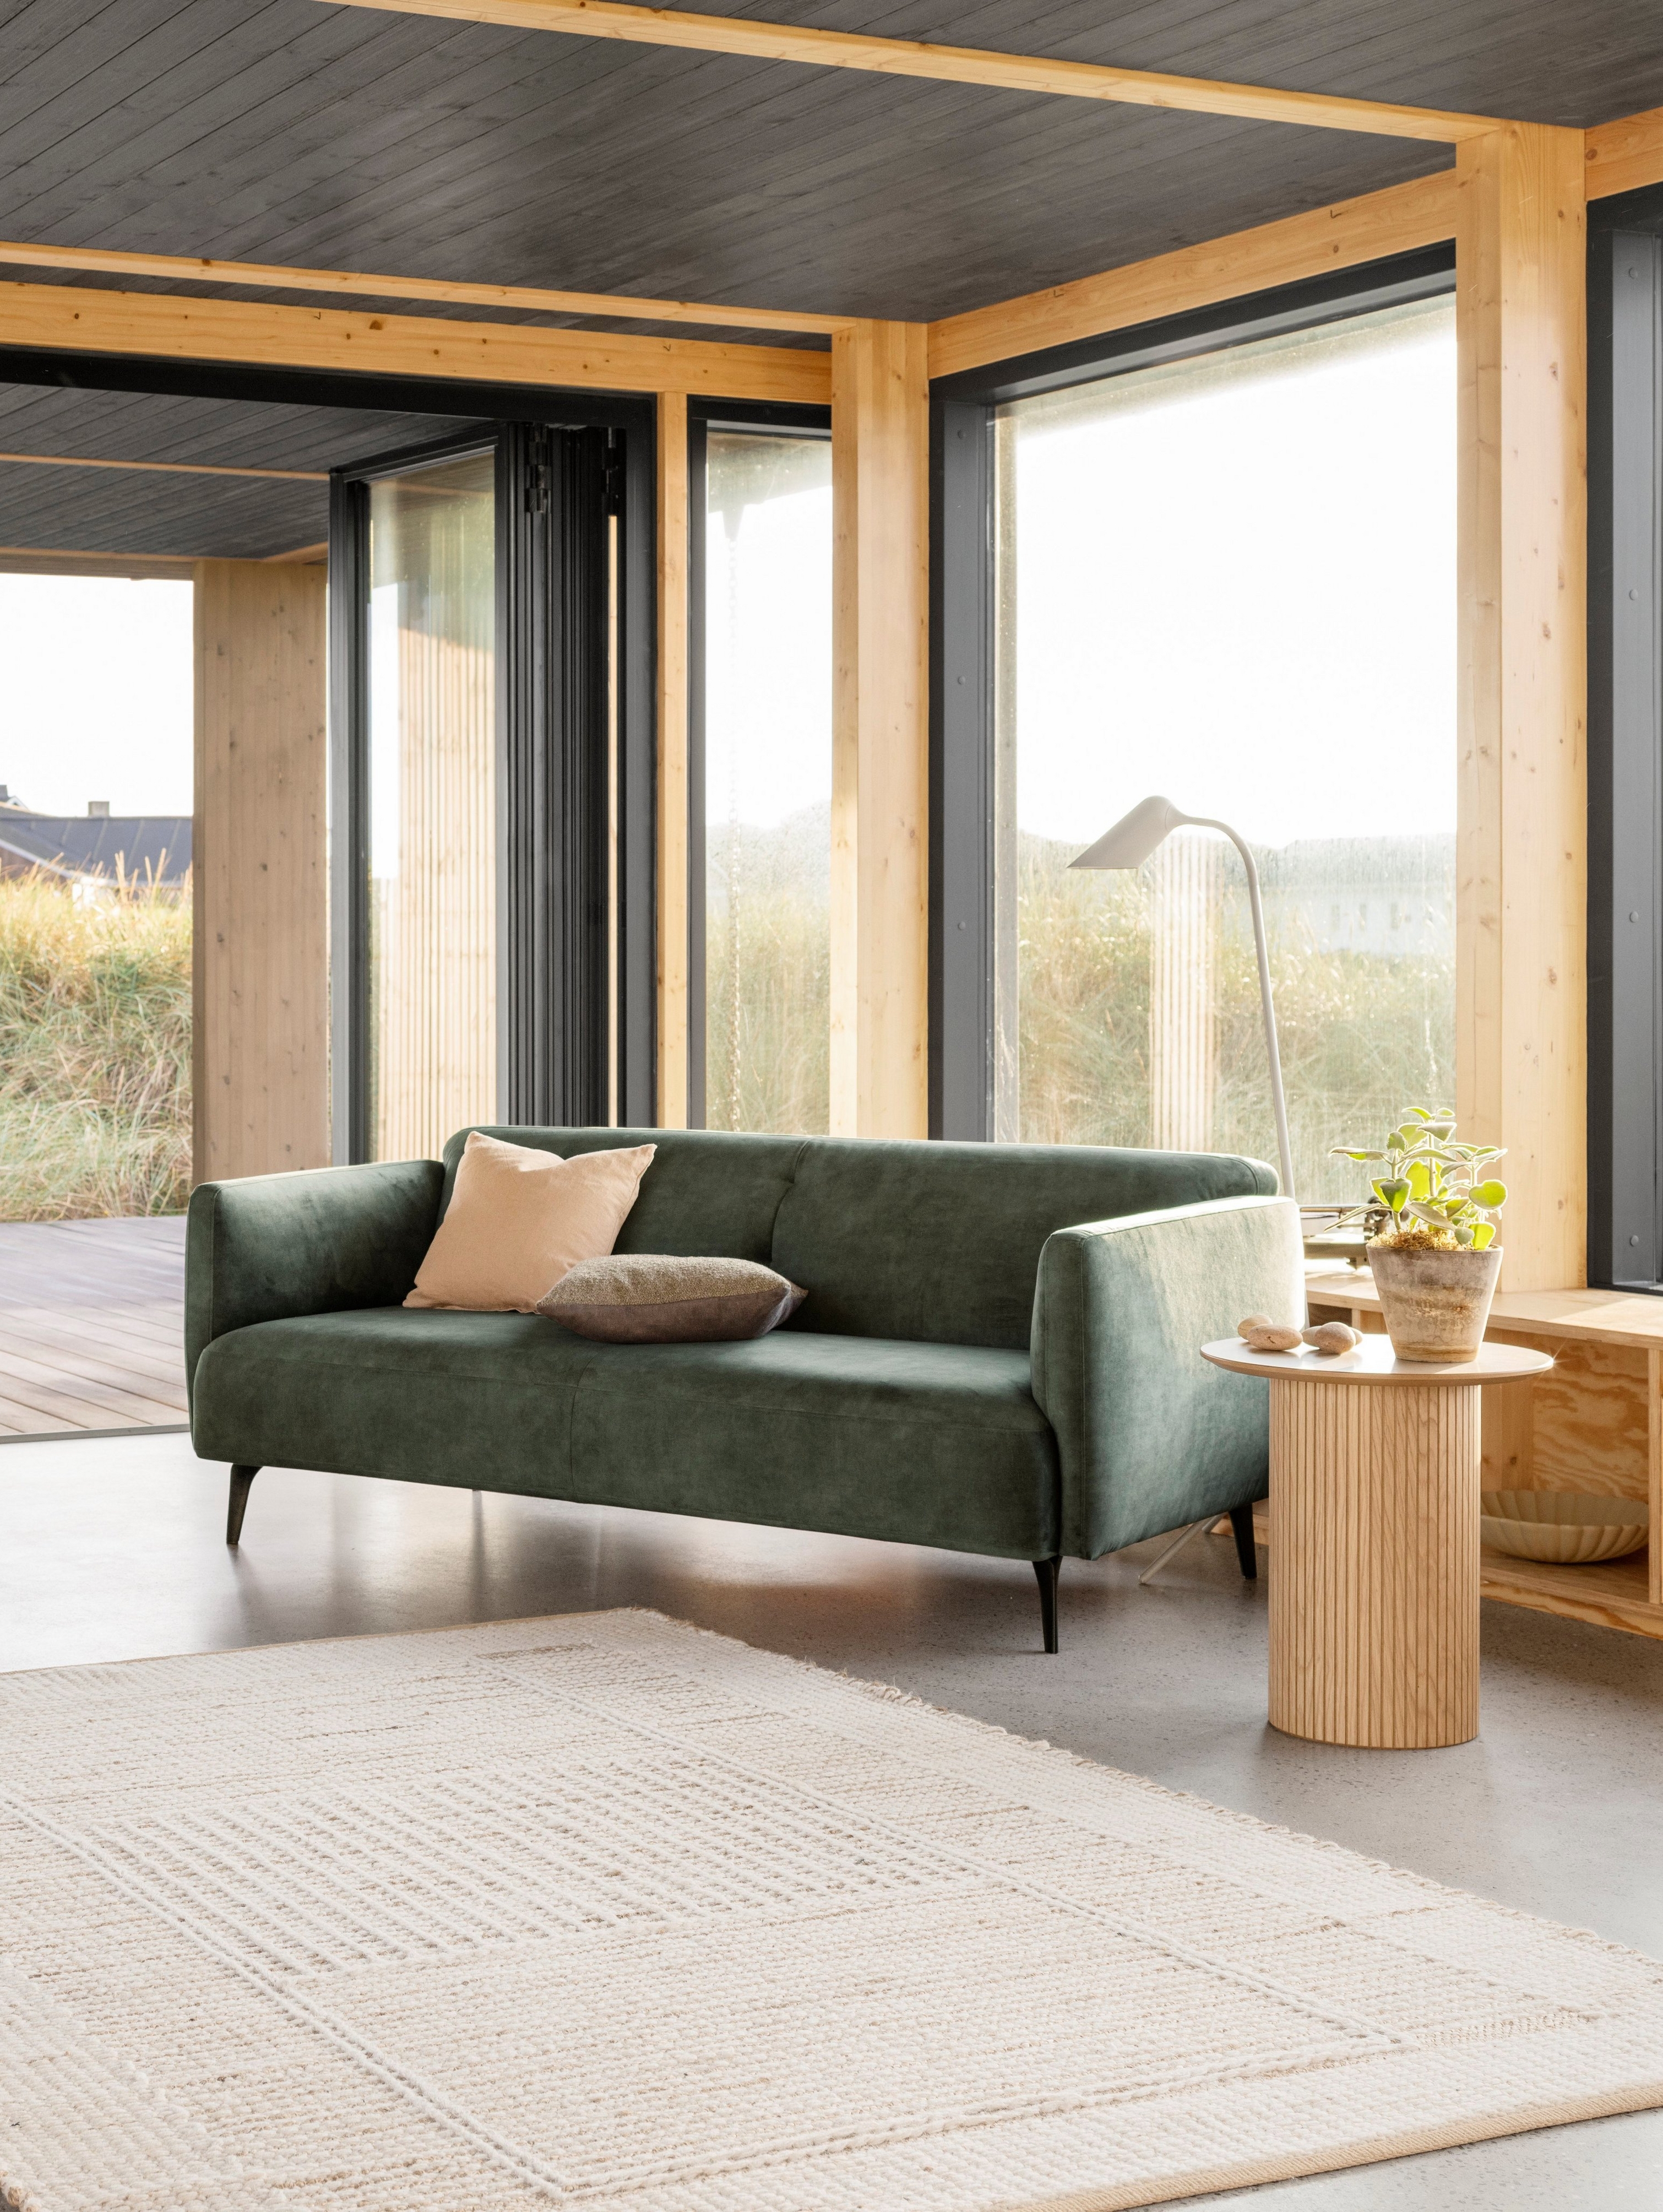 El elegante sofá Modena y la butaca a juego en tela Ravello verde cenizo junto a una chimenea en esta cálida sala.